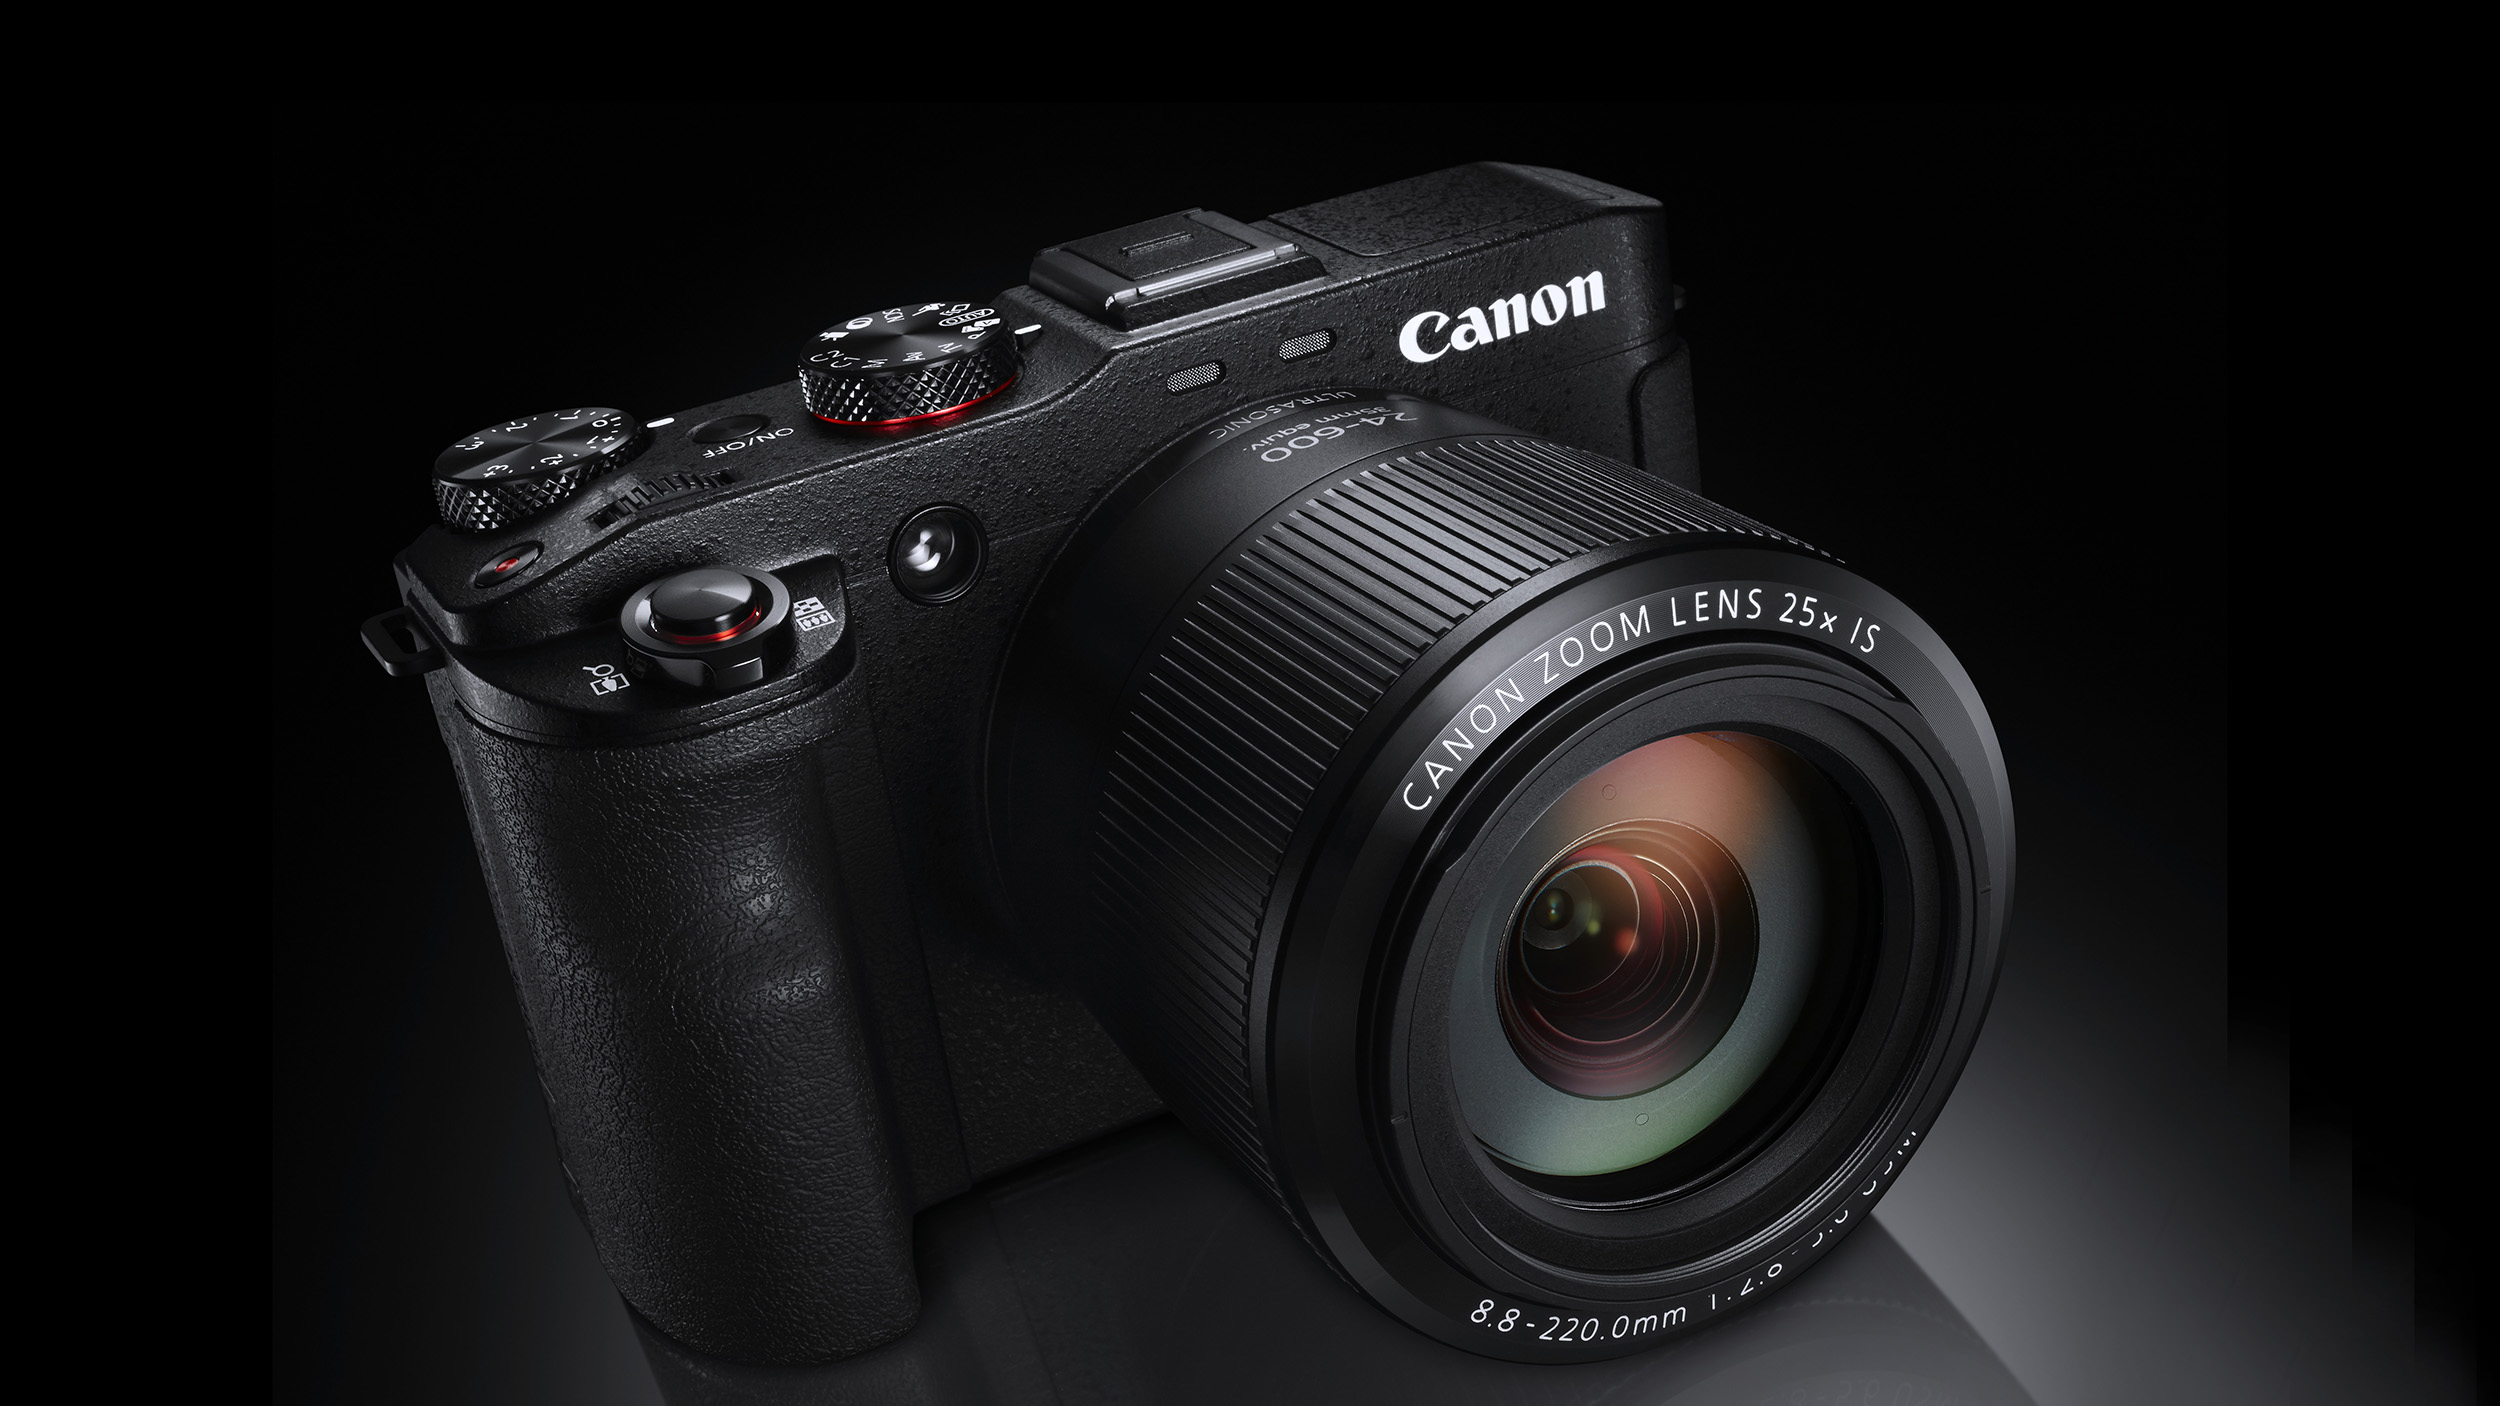 Canon bridge camera